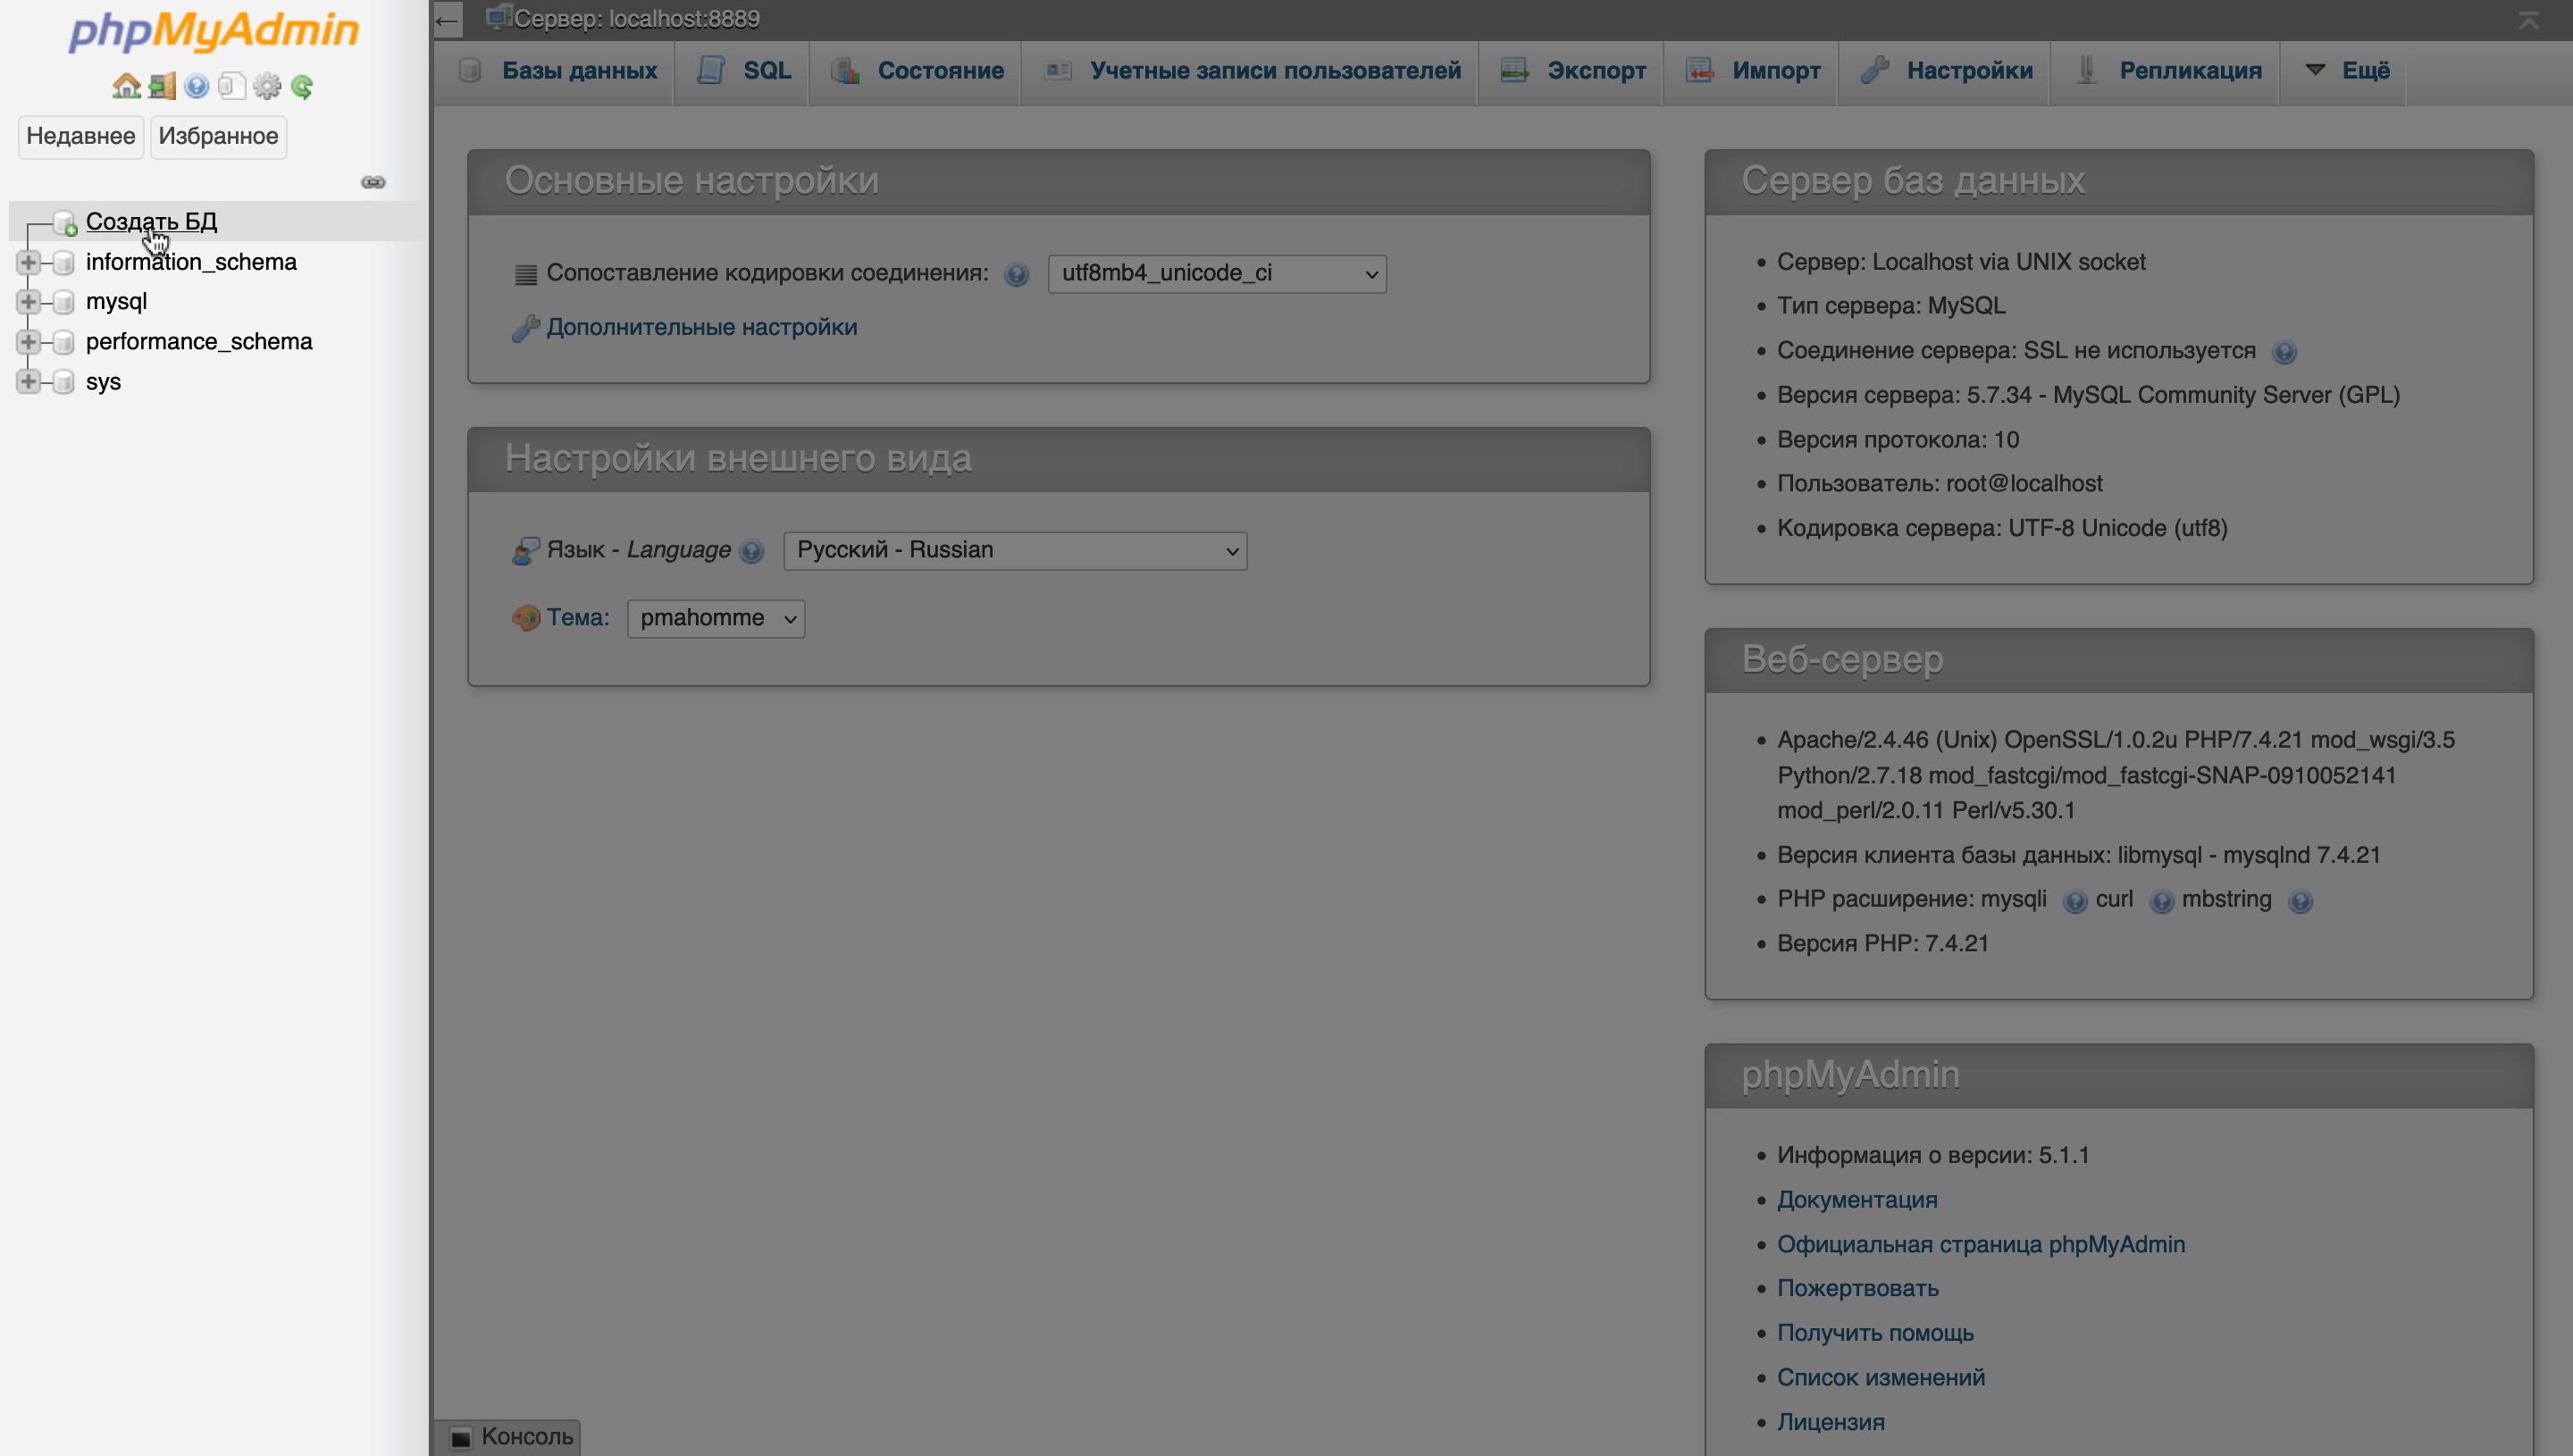 Как установить Вордпресс локально — Боковая панель на главной странице phpMyAdmin